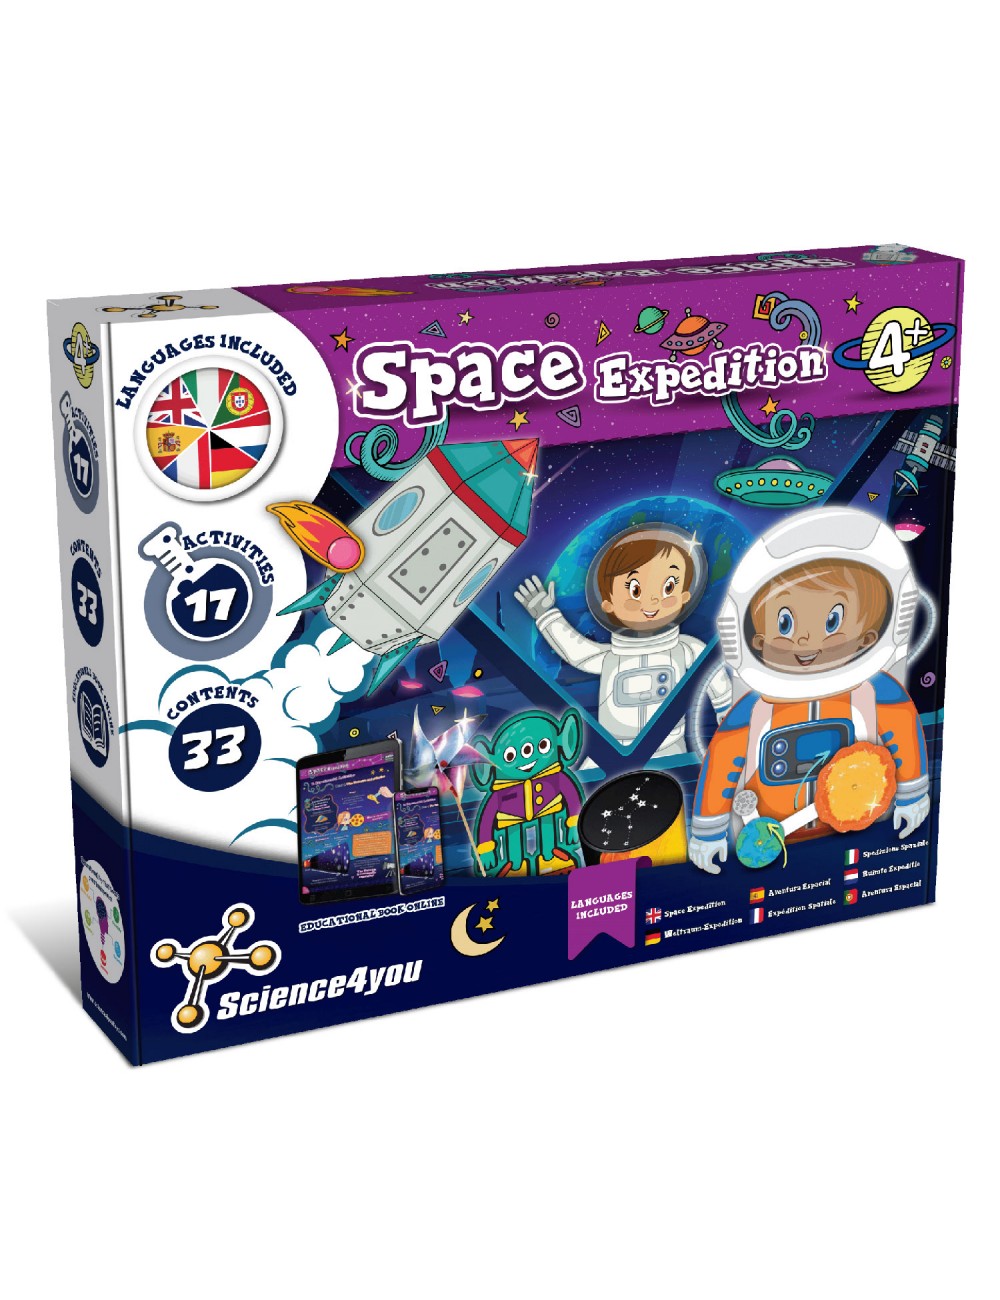 Los mejores juguetes de astronomía para niños [Solo juguetes TOP]